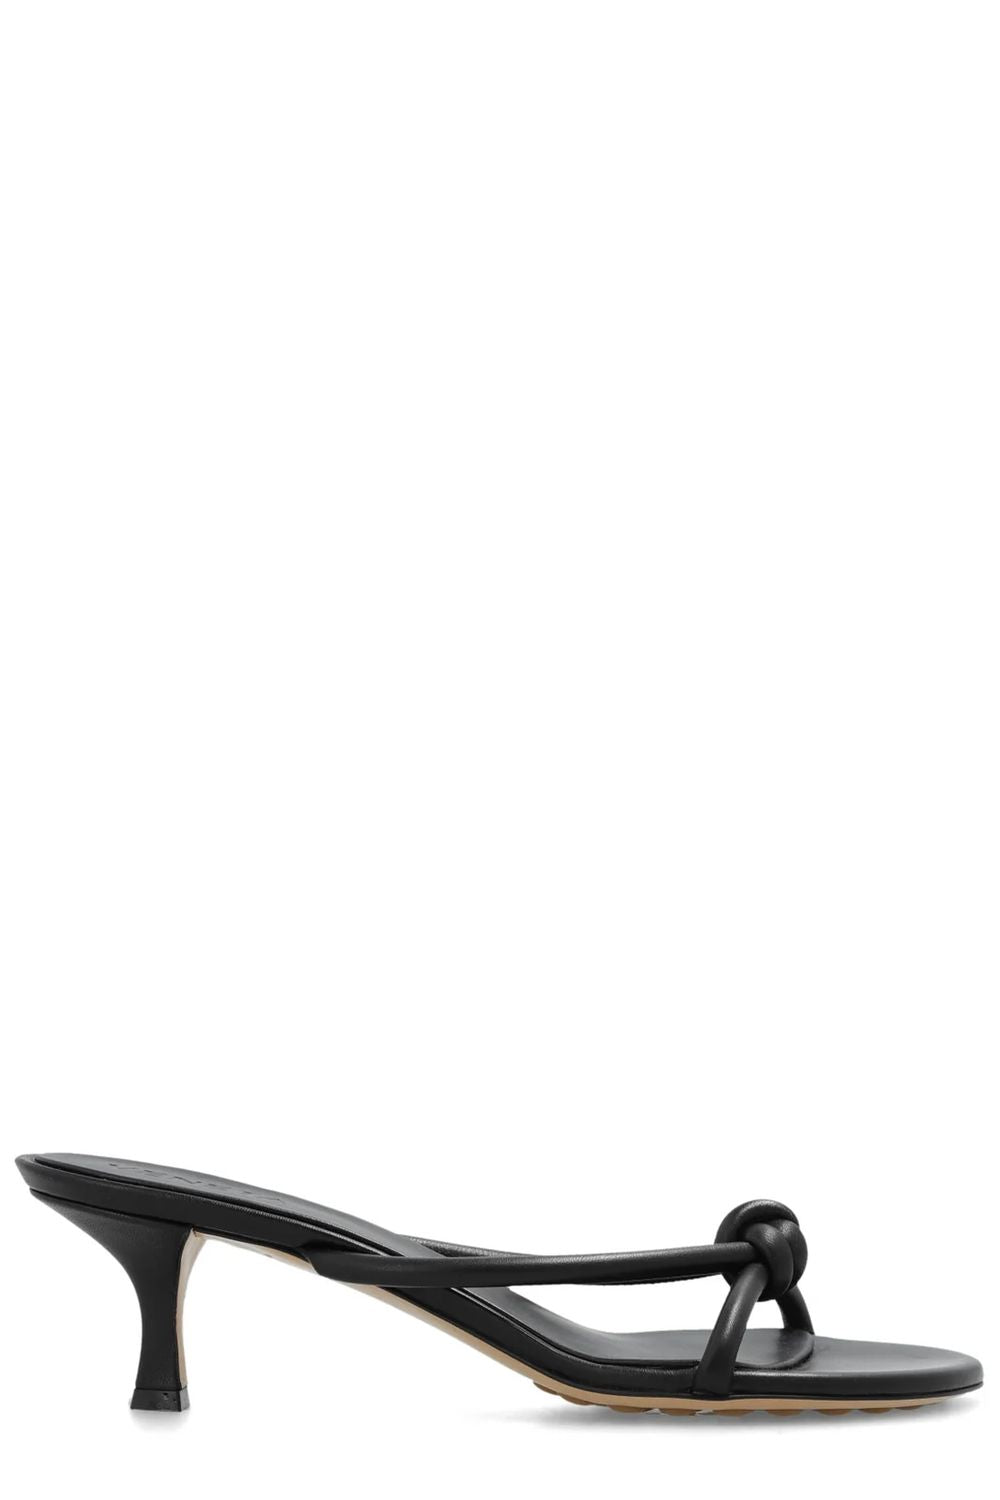 Sandal Atomic - Sandal da màu đen cho phụ nữ, cao 5cm